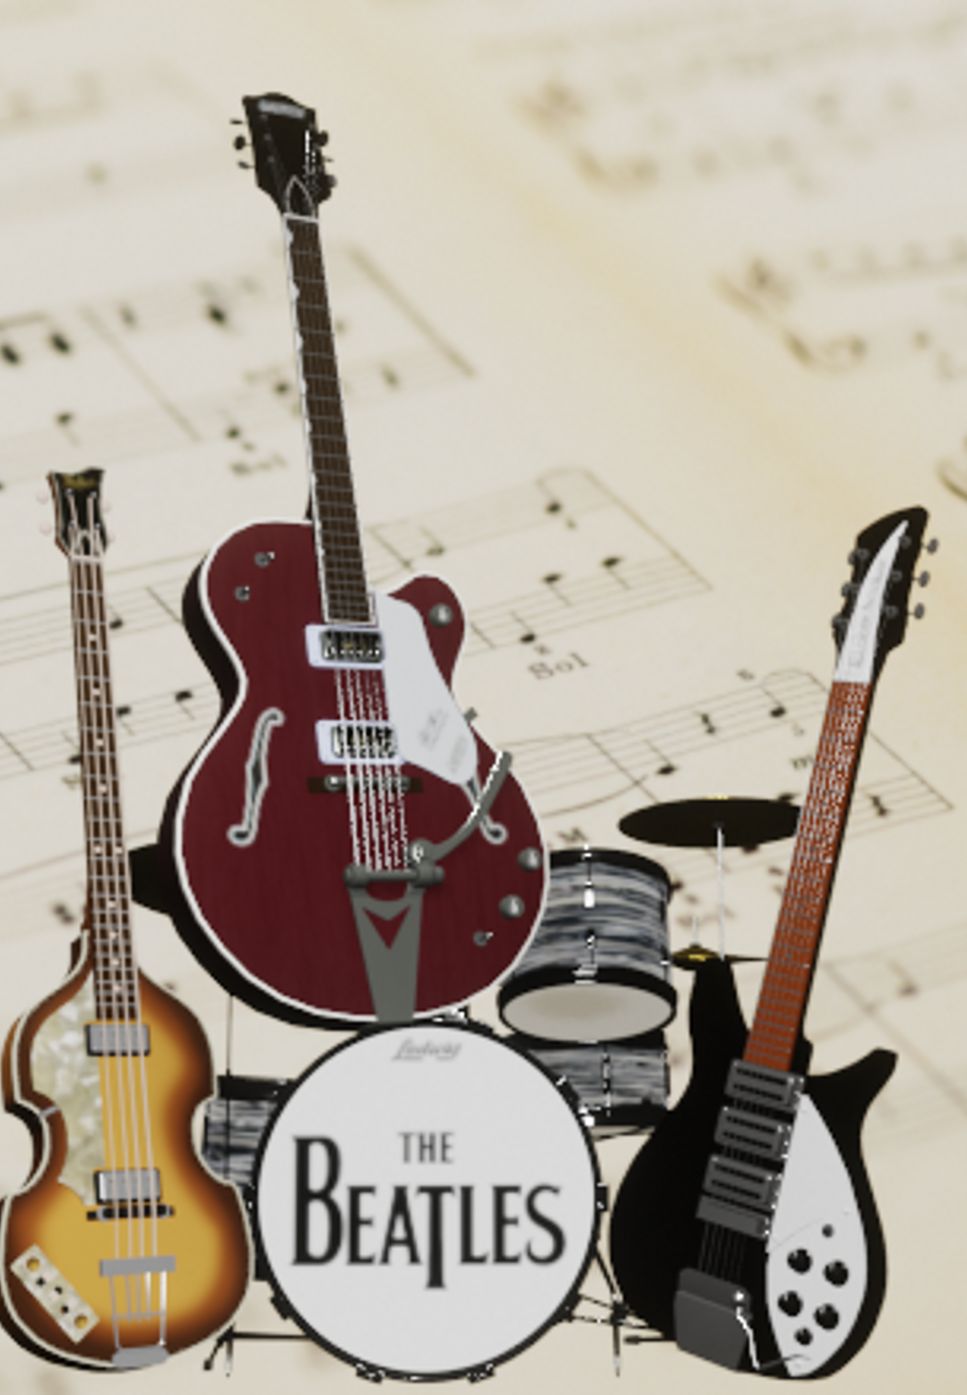 The Beatles - Rock And Roll Music (Band Score) by Ryohei Kanayama